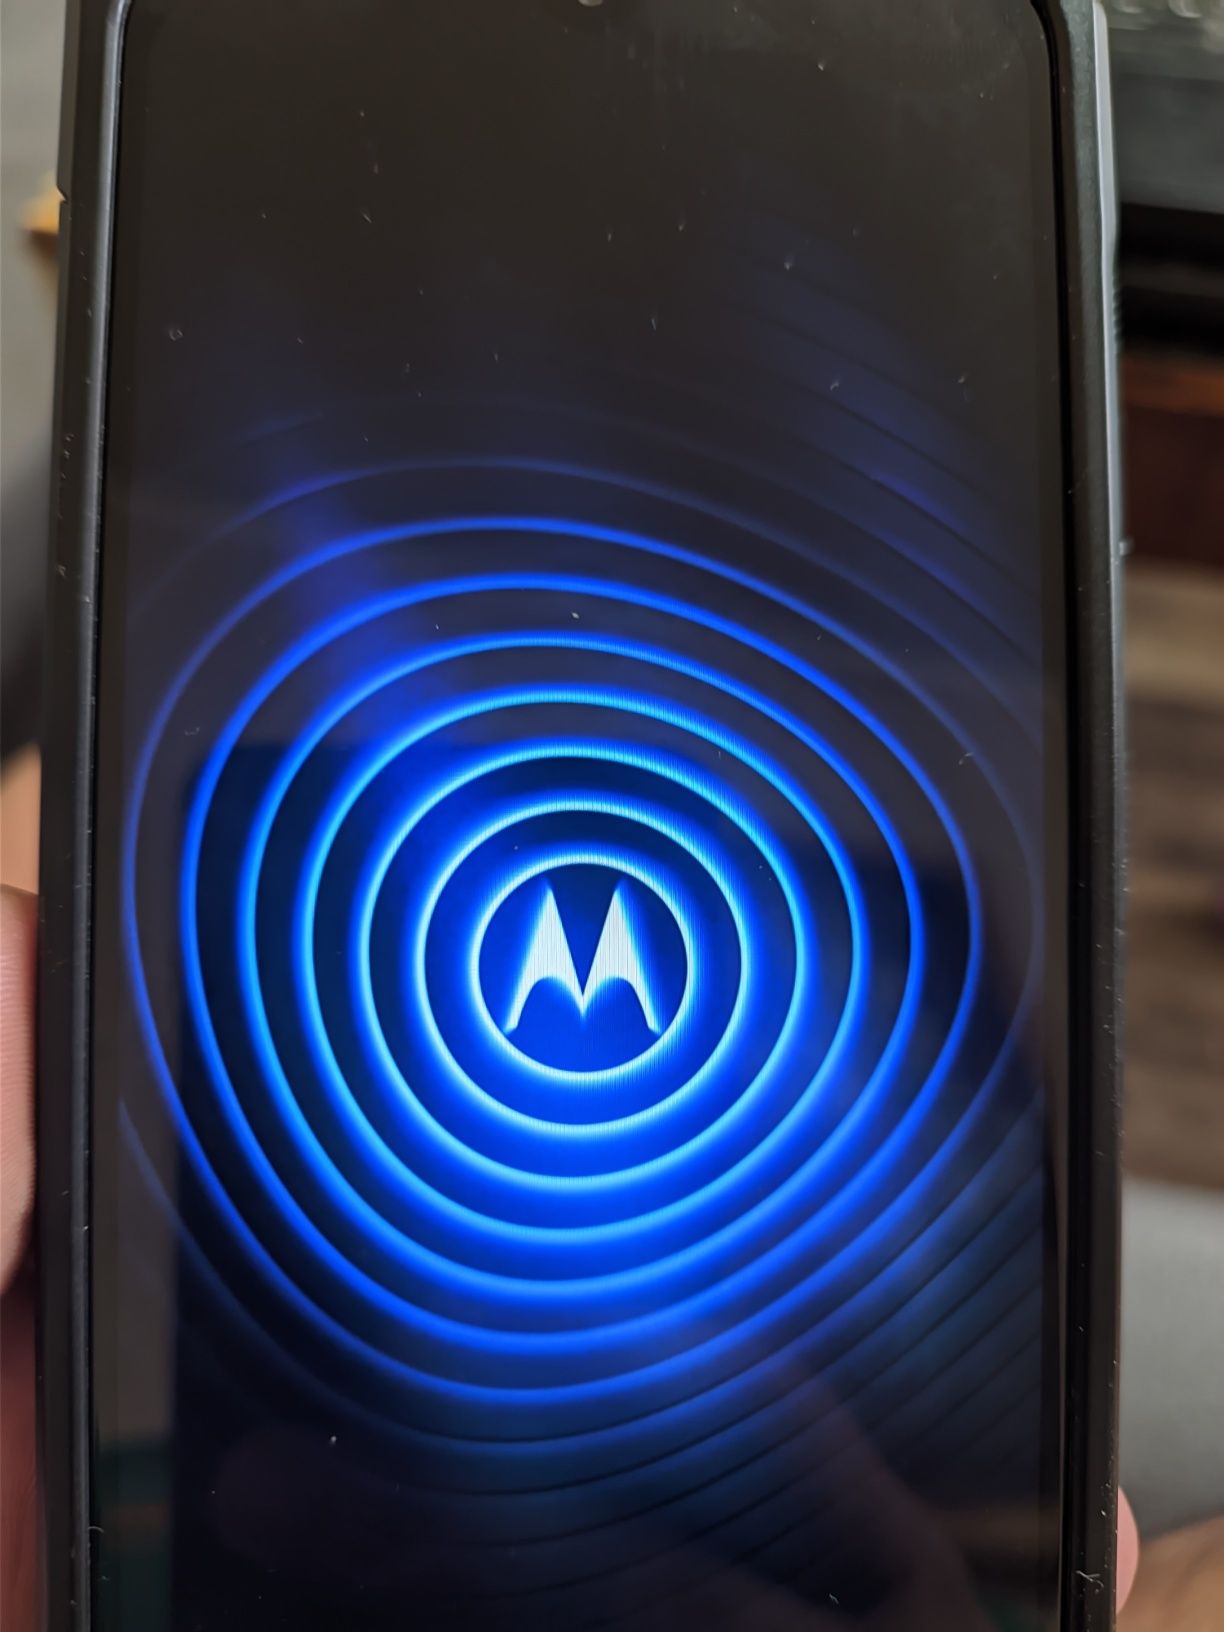 Motorola e7 plus